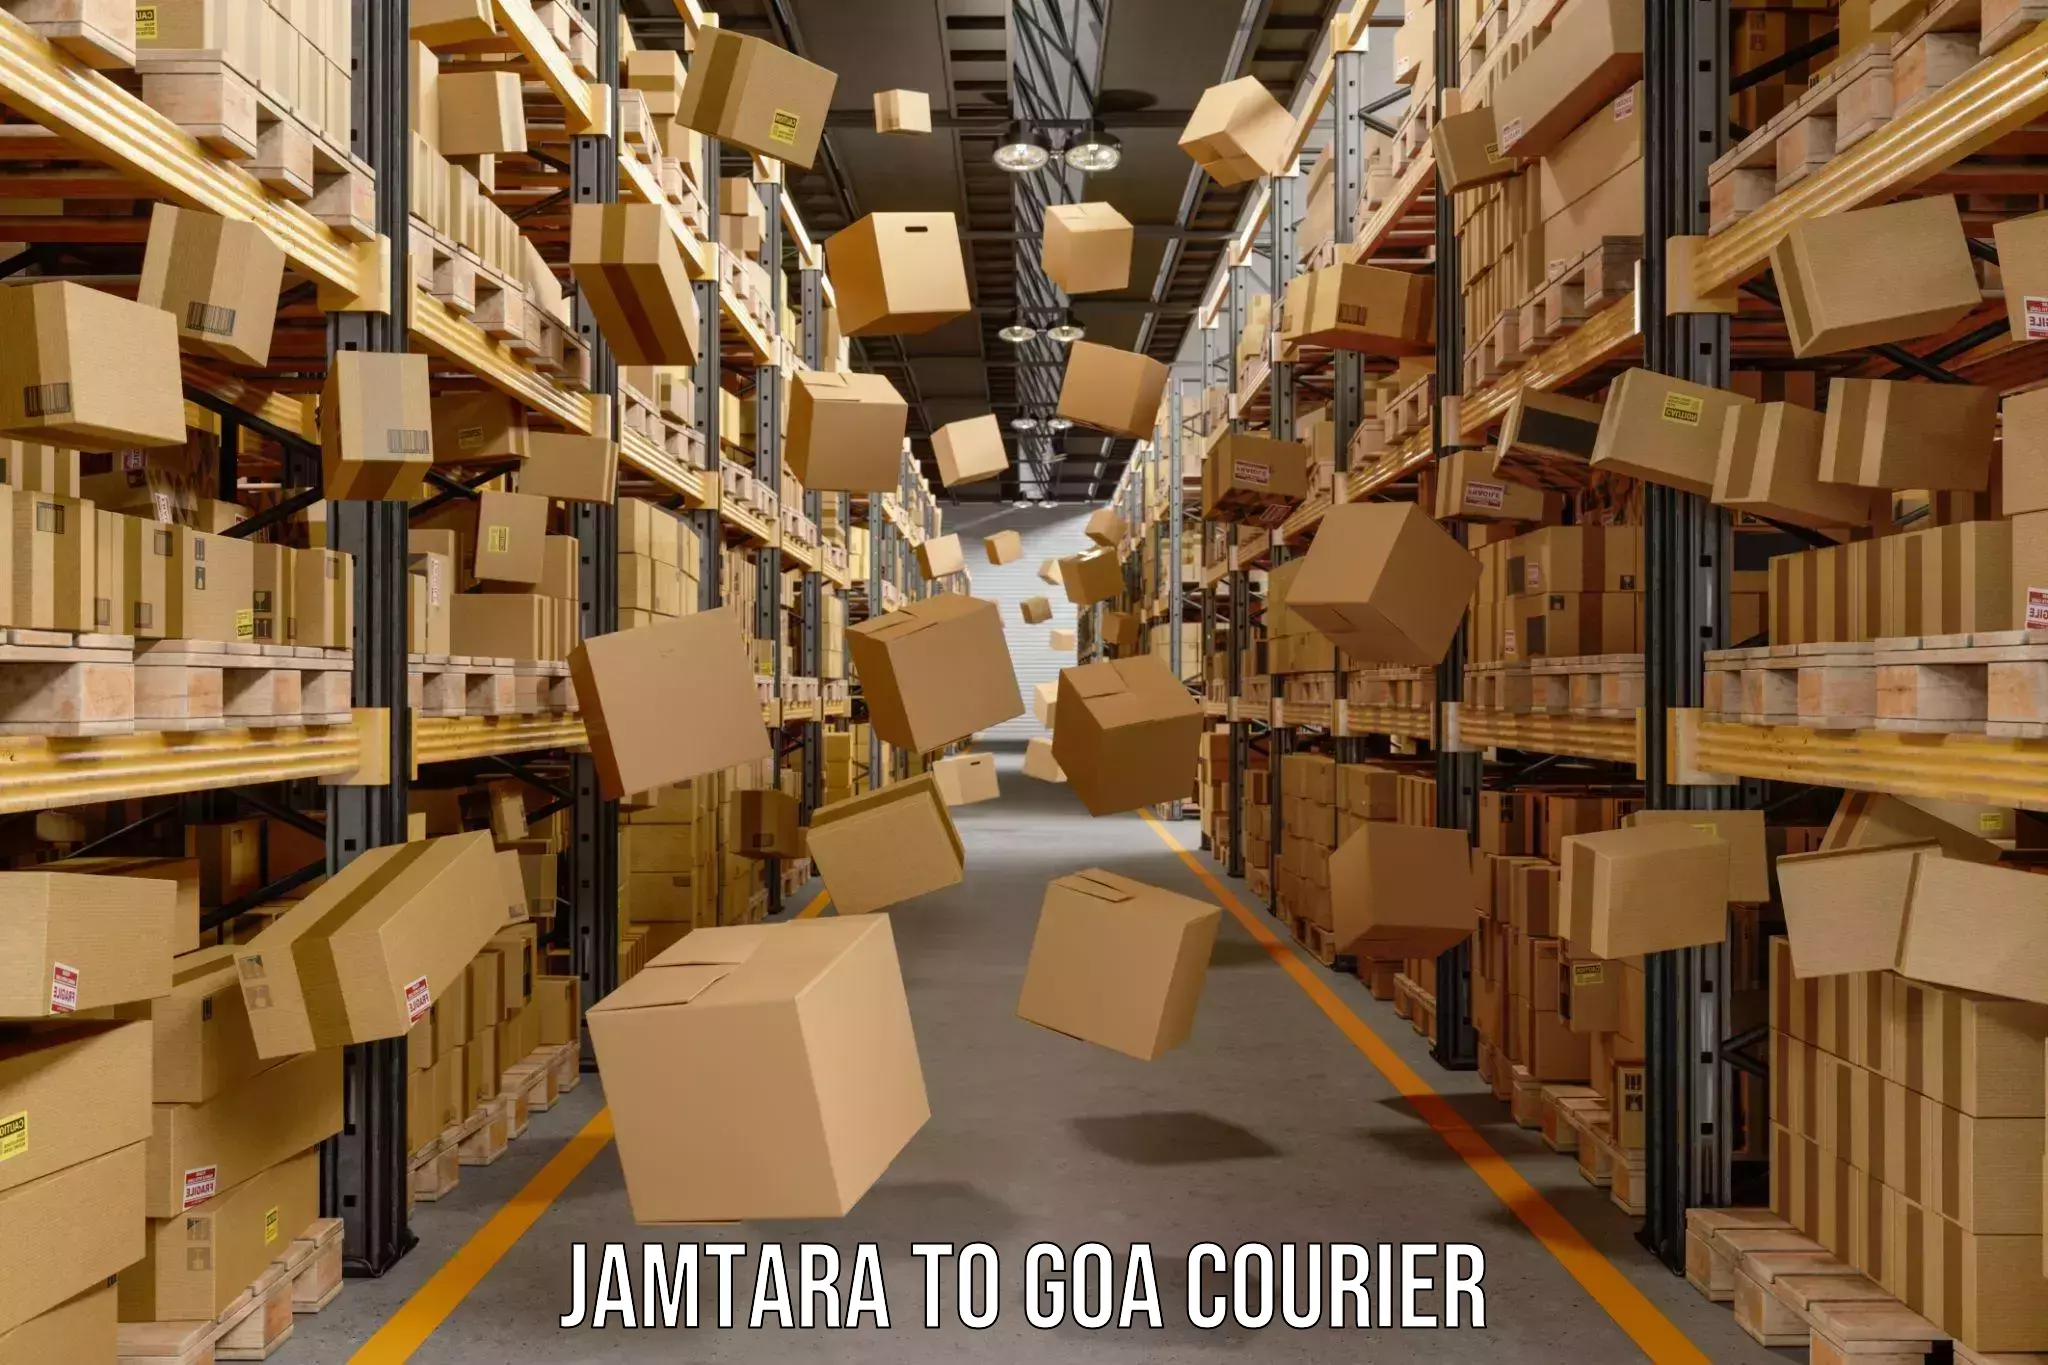 Enhanced tracking features Jamtara to IIT Goa